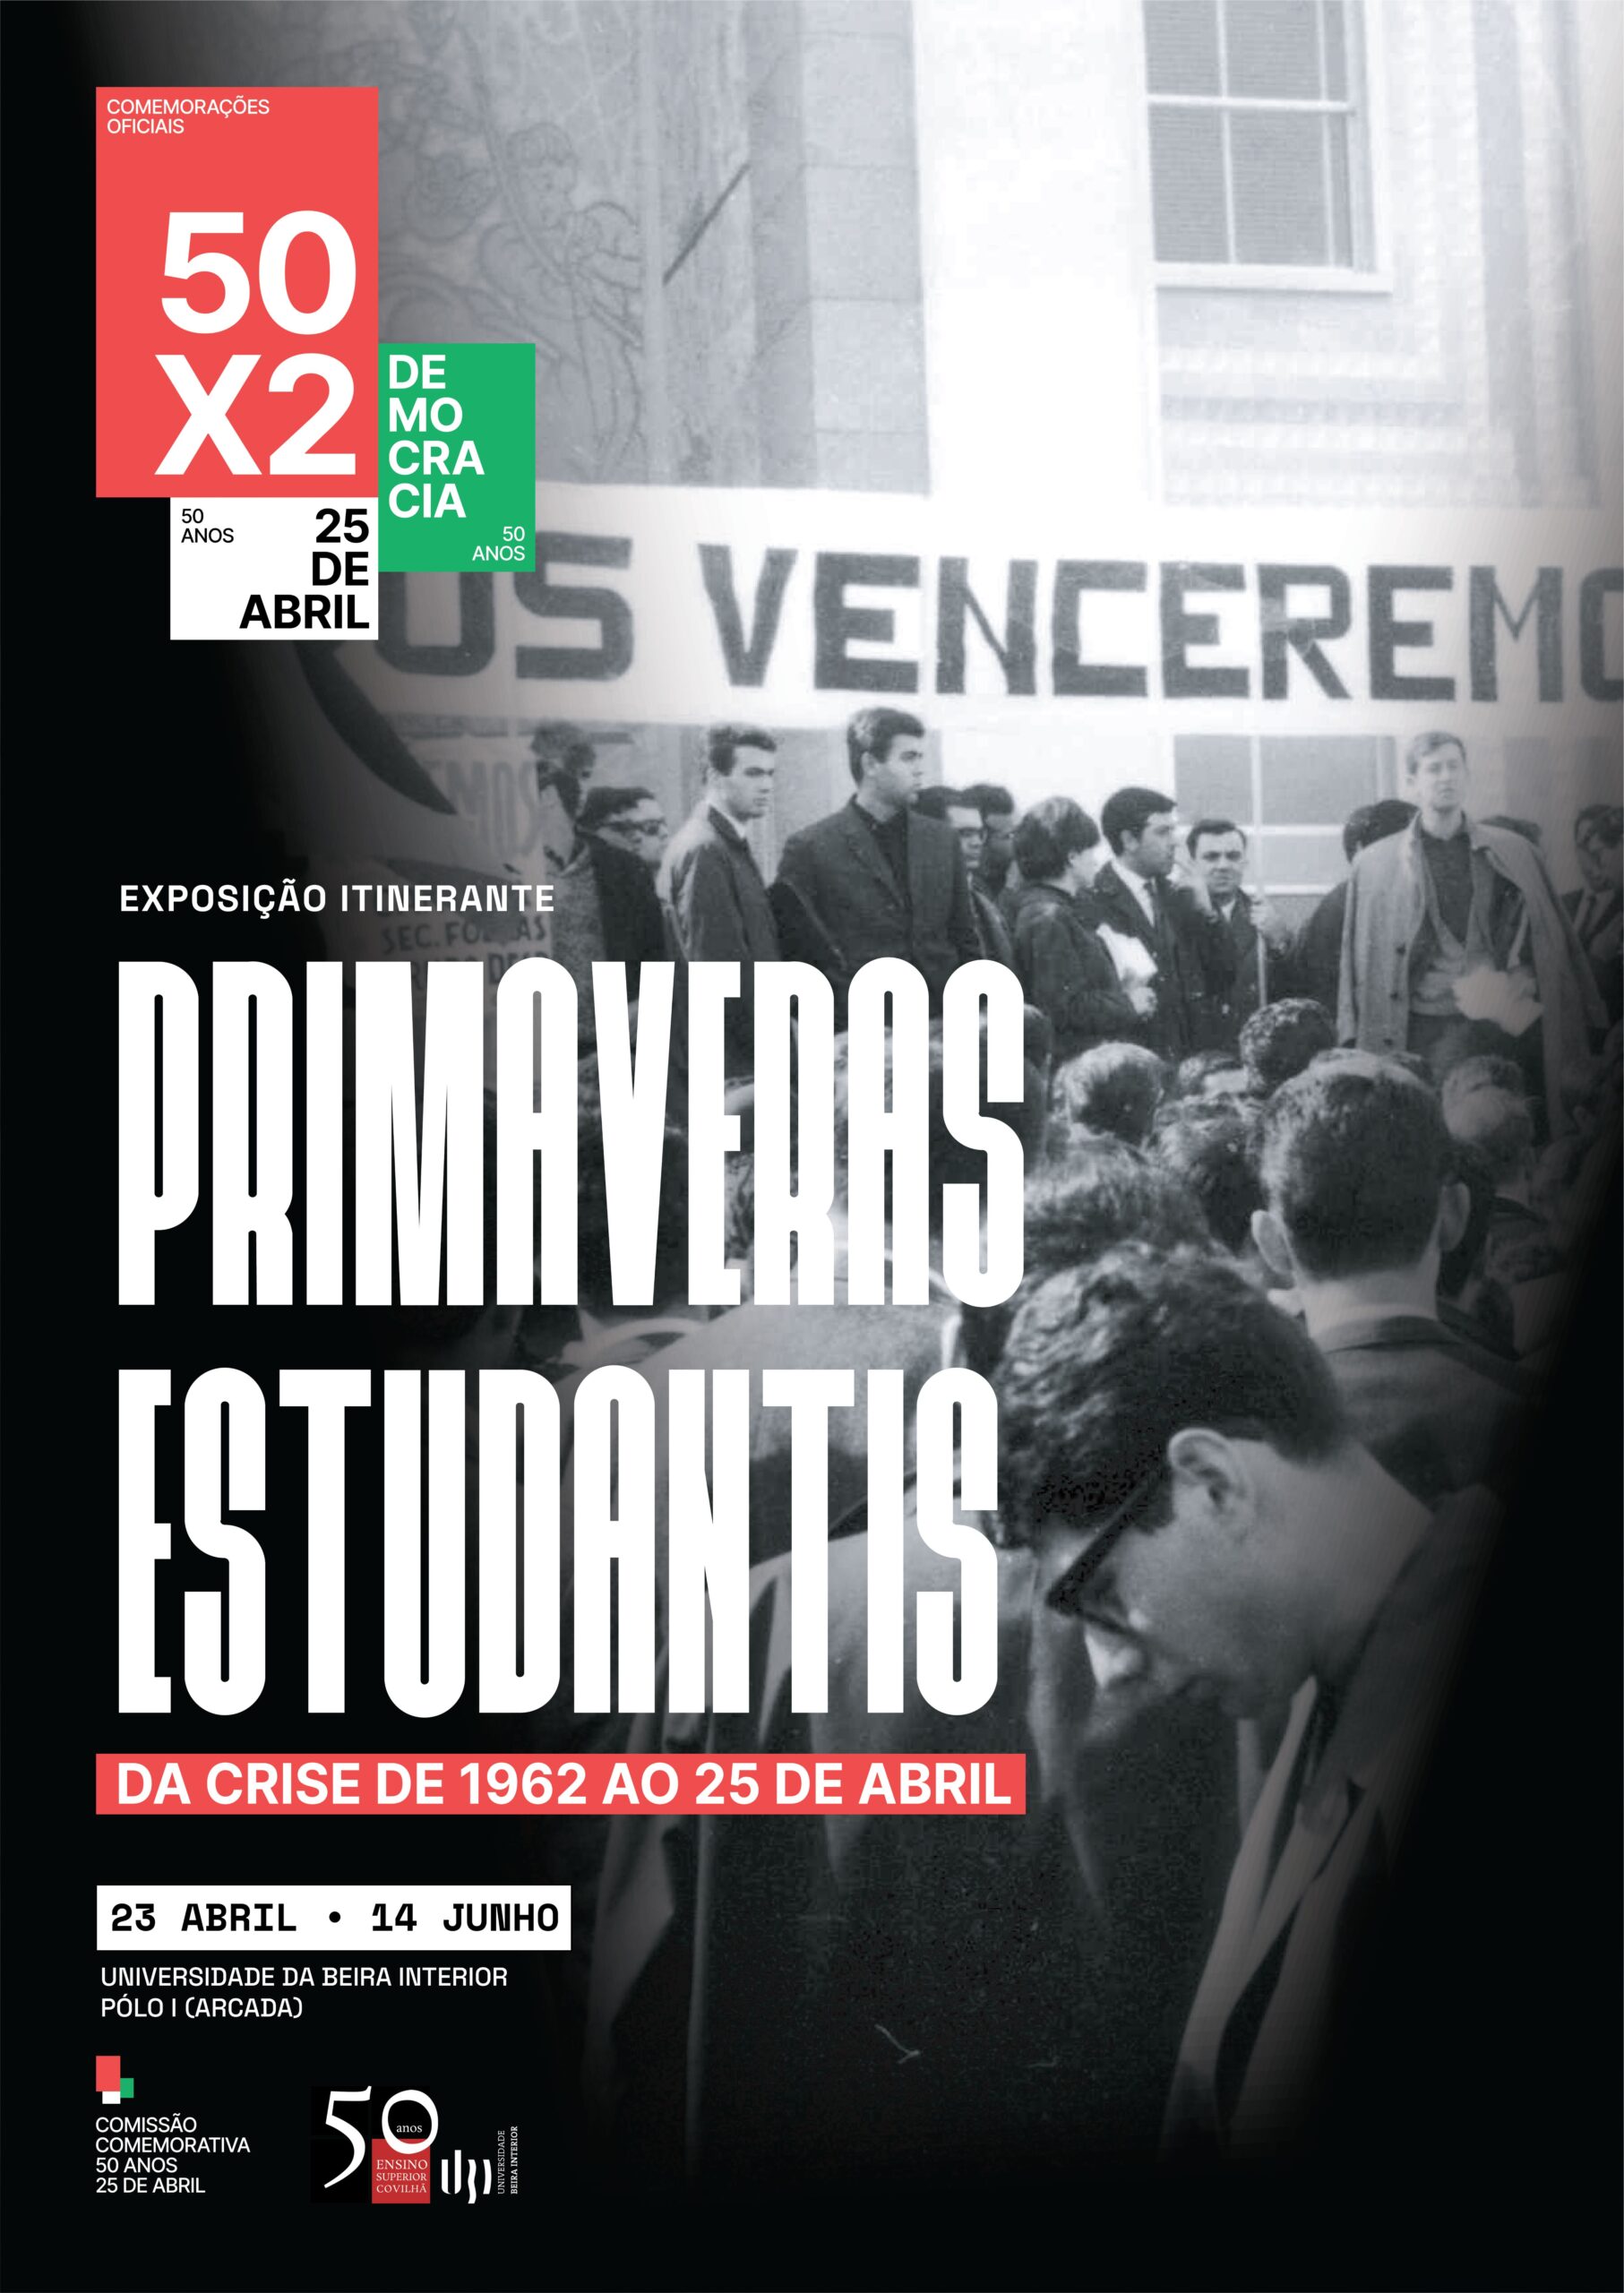 Capa do Evento Exposição itinerante “Primaveras Estudantis - Da crise de 1962 ao 25 de Abril